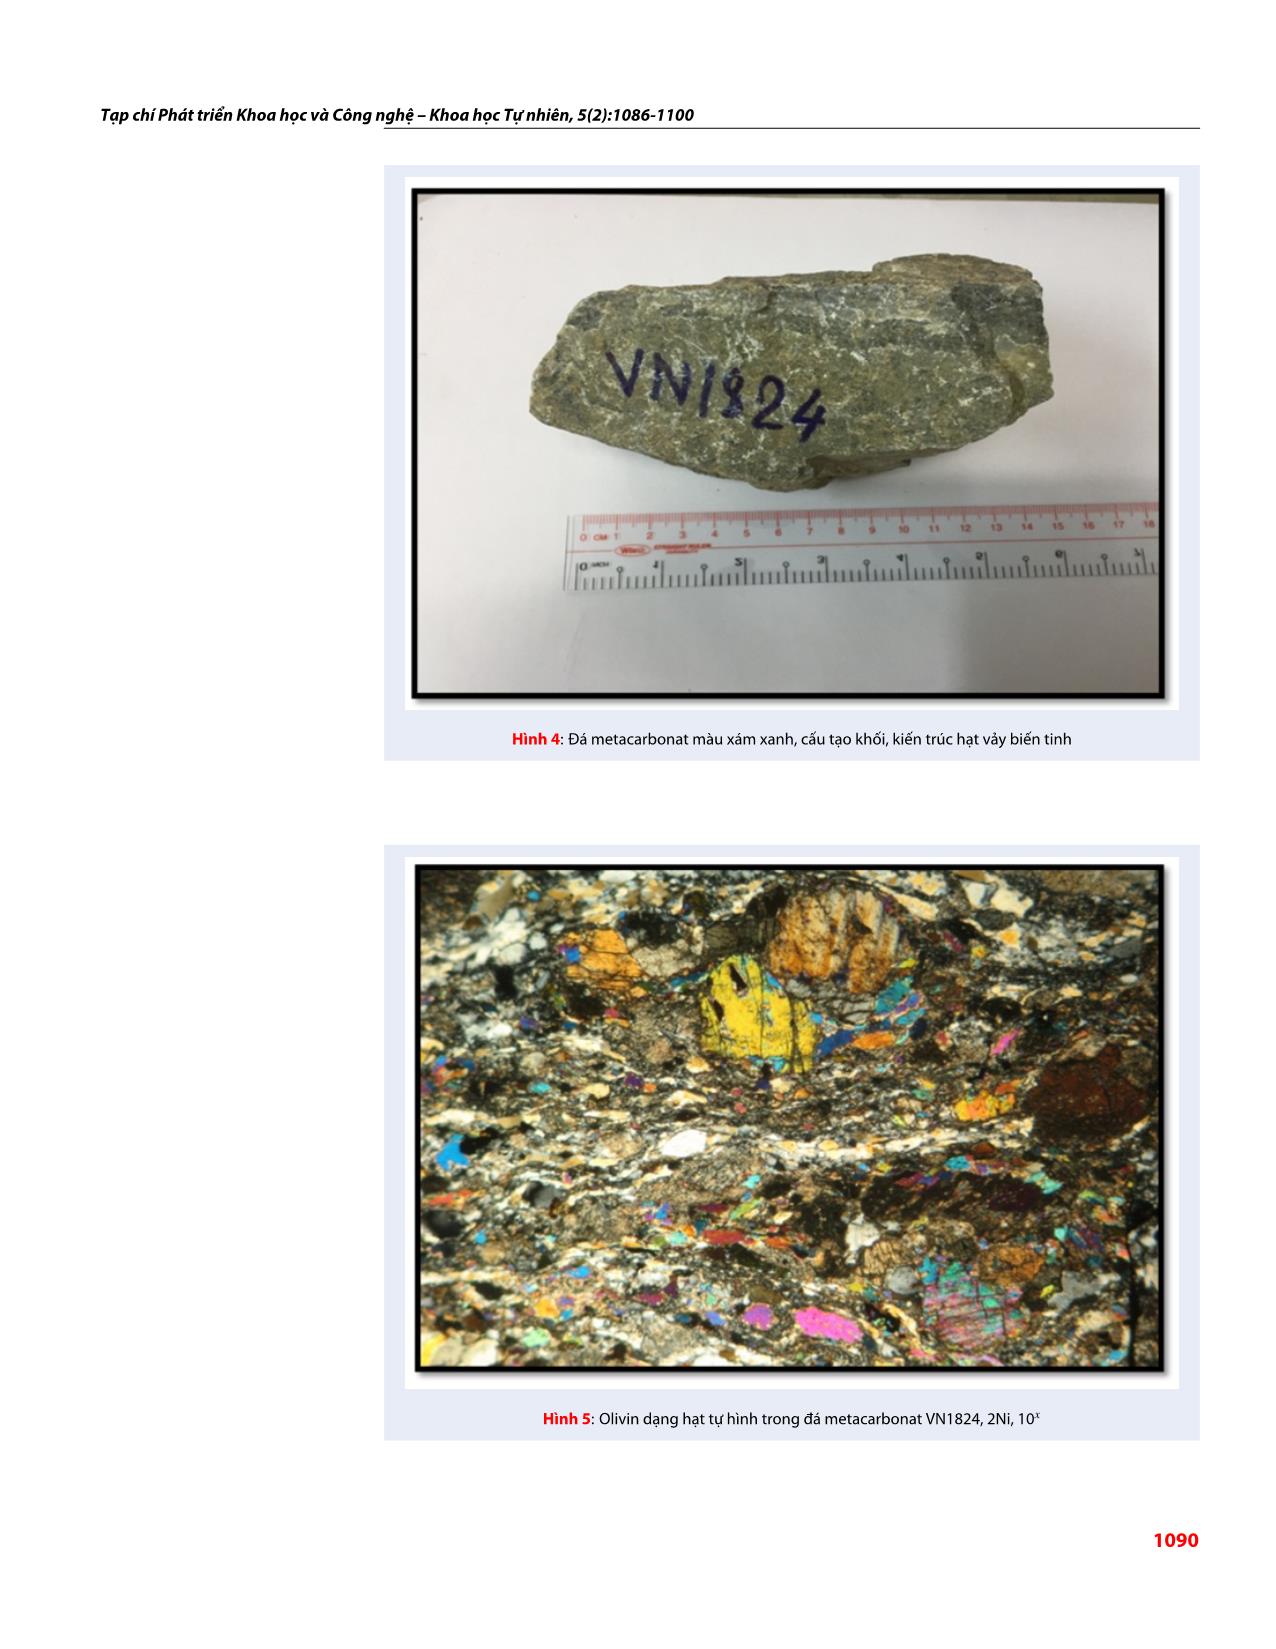 Đặc điểm thành phần khoáng vật trong đá metacarbonat khu vực Sa Thầy, Kon Tum và khả năng ứng dụng của metacarbonat trong đá mỹ nghệ trang 5